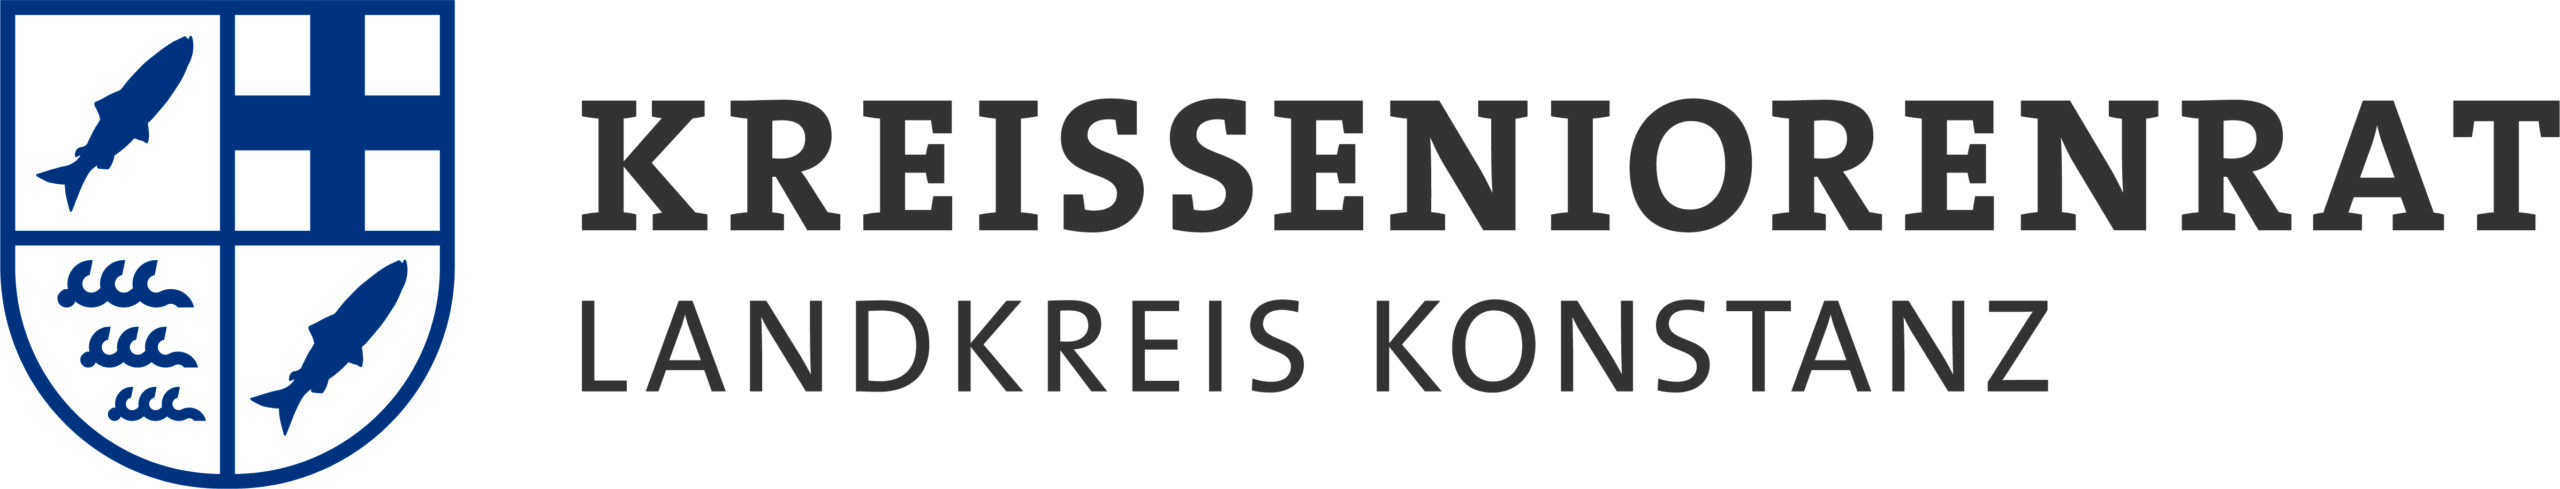 Kreisseniorenrat Konstanz